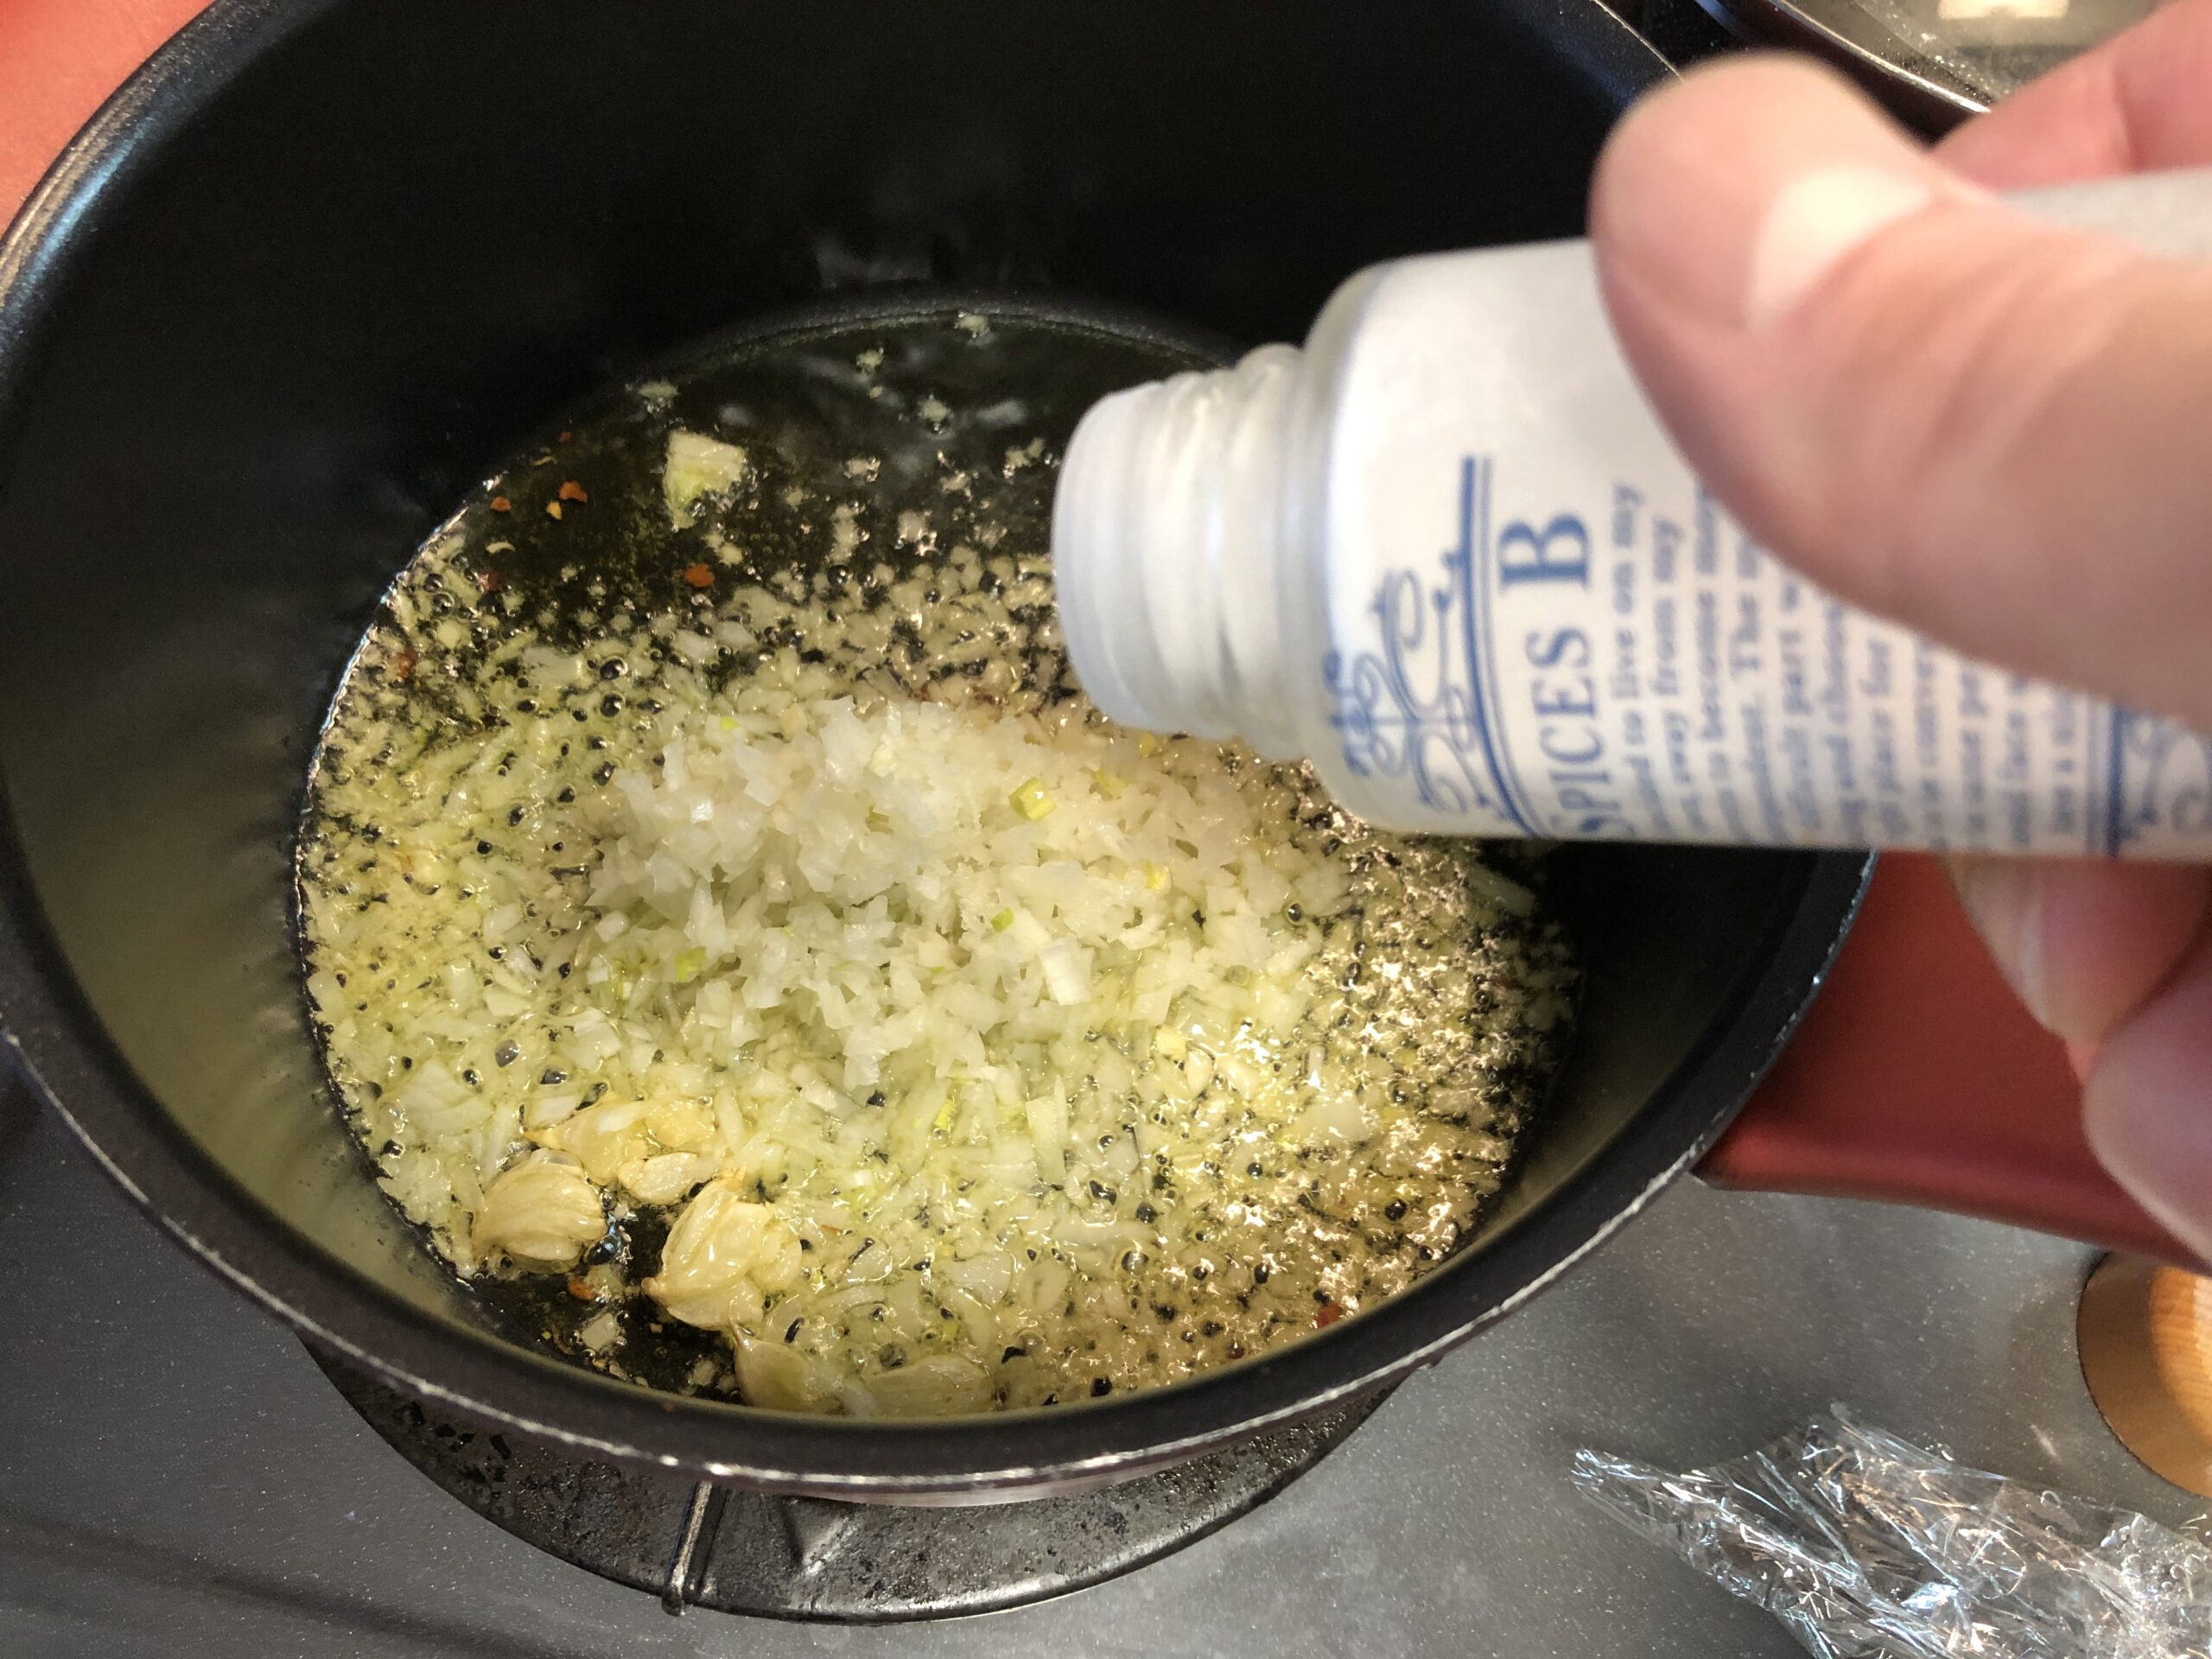 ニンニクの香りが出てきたので玉ねぎみじん切りと塩を軽く入れる様子の画像です